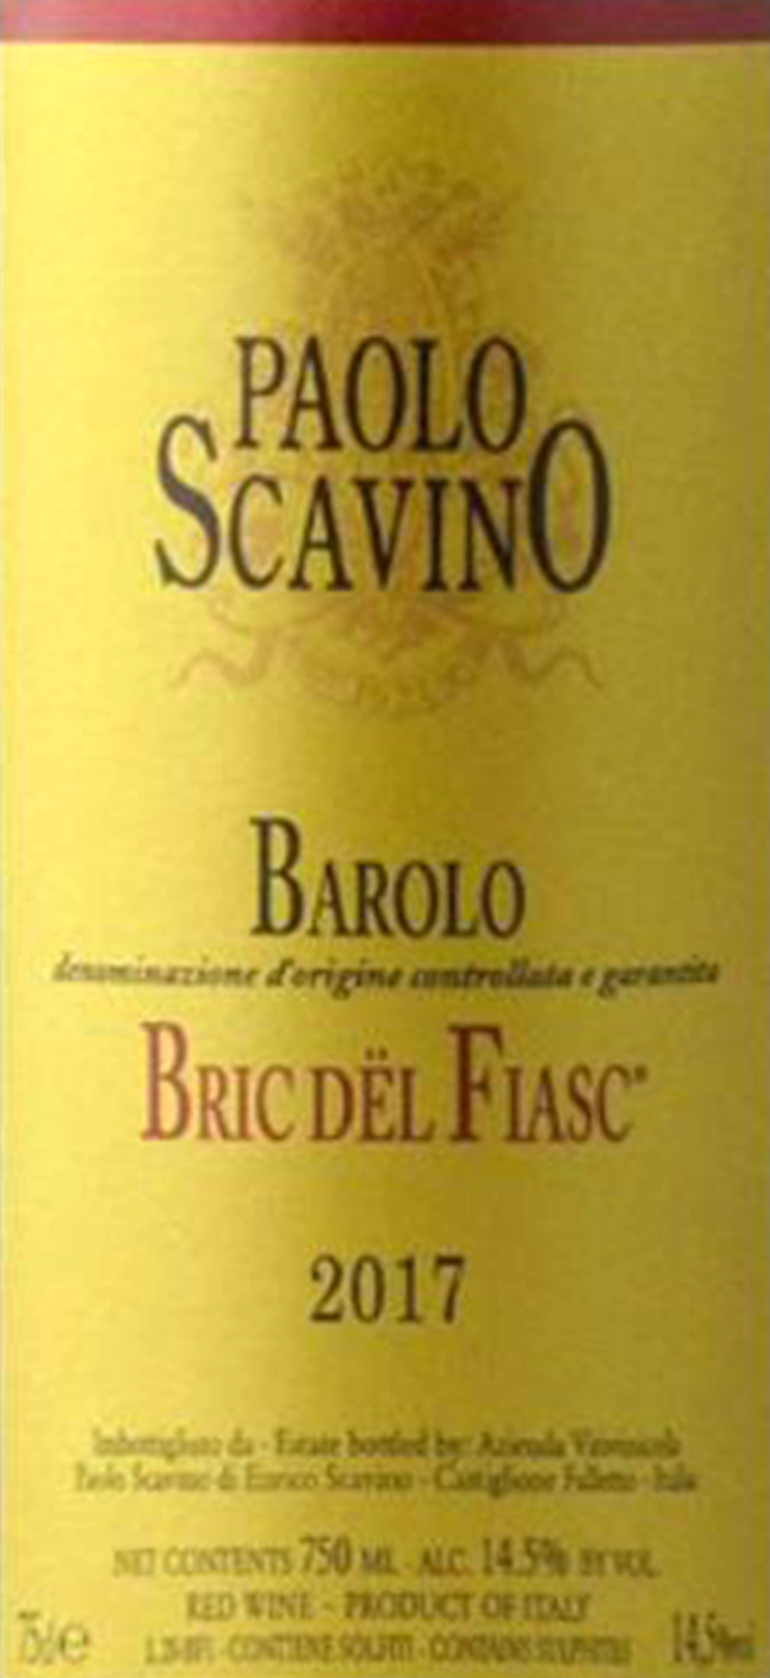 "Paolo Scavino Barolo ""Bric Del Fiasc"" 2017"